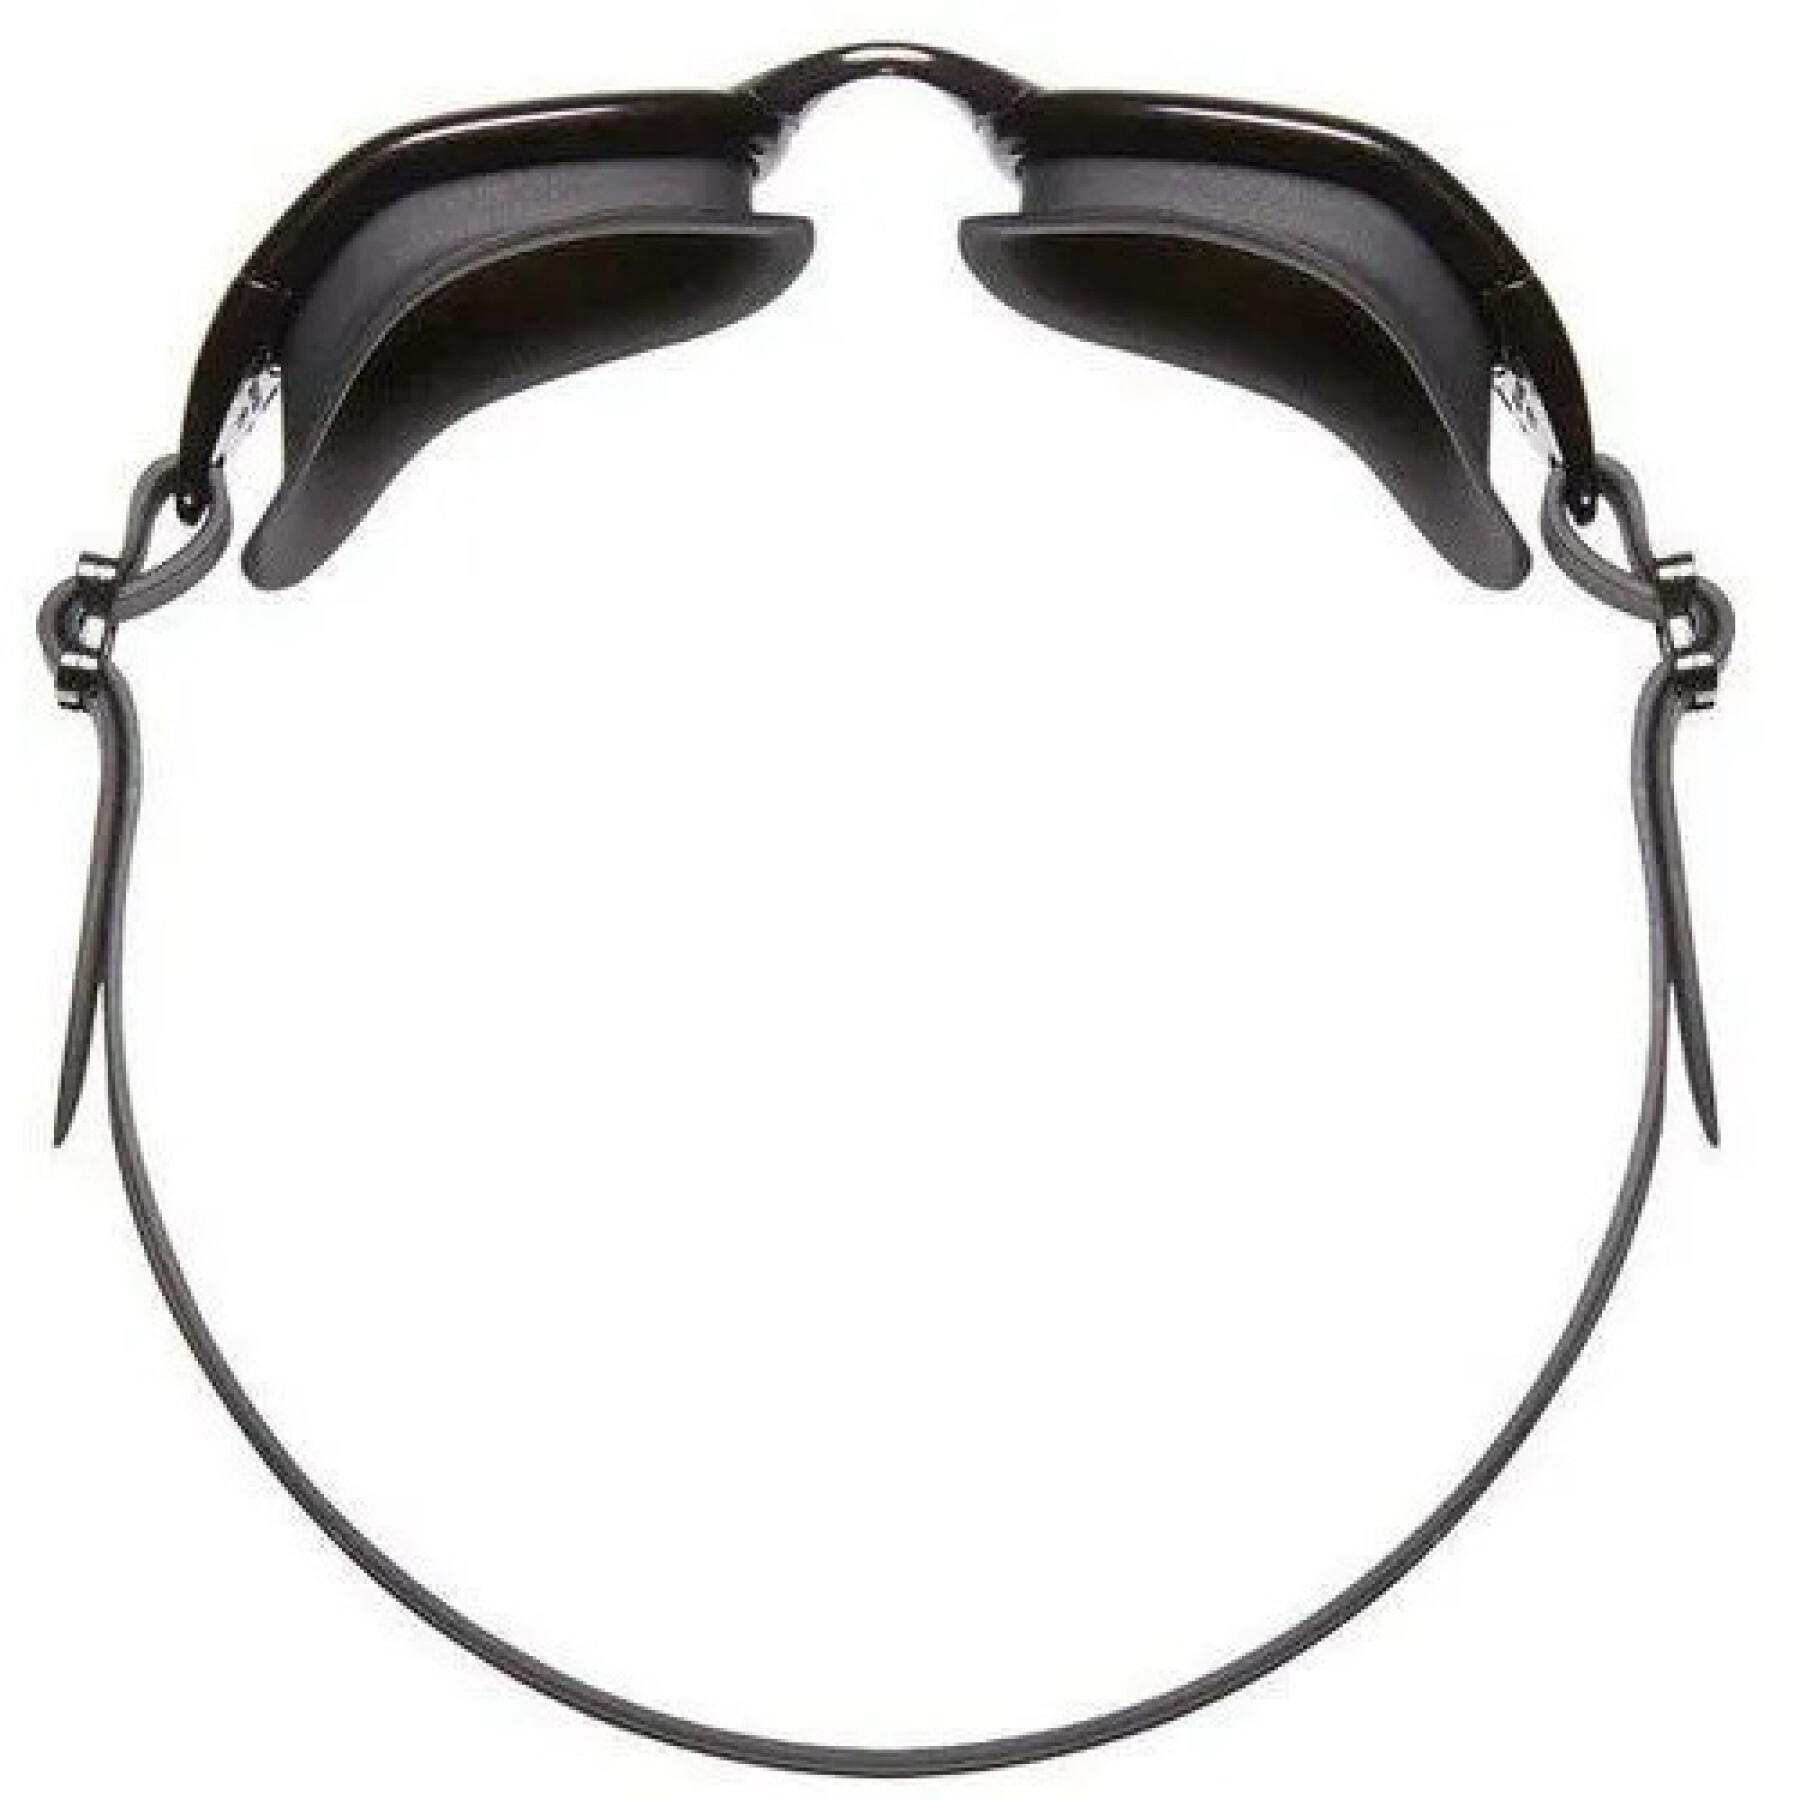 Polariserade skidglasögon för triathlon TYR Special OPS 3.0